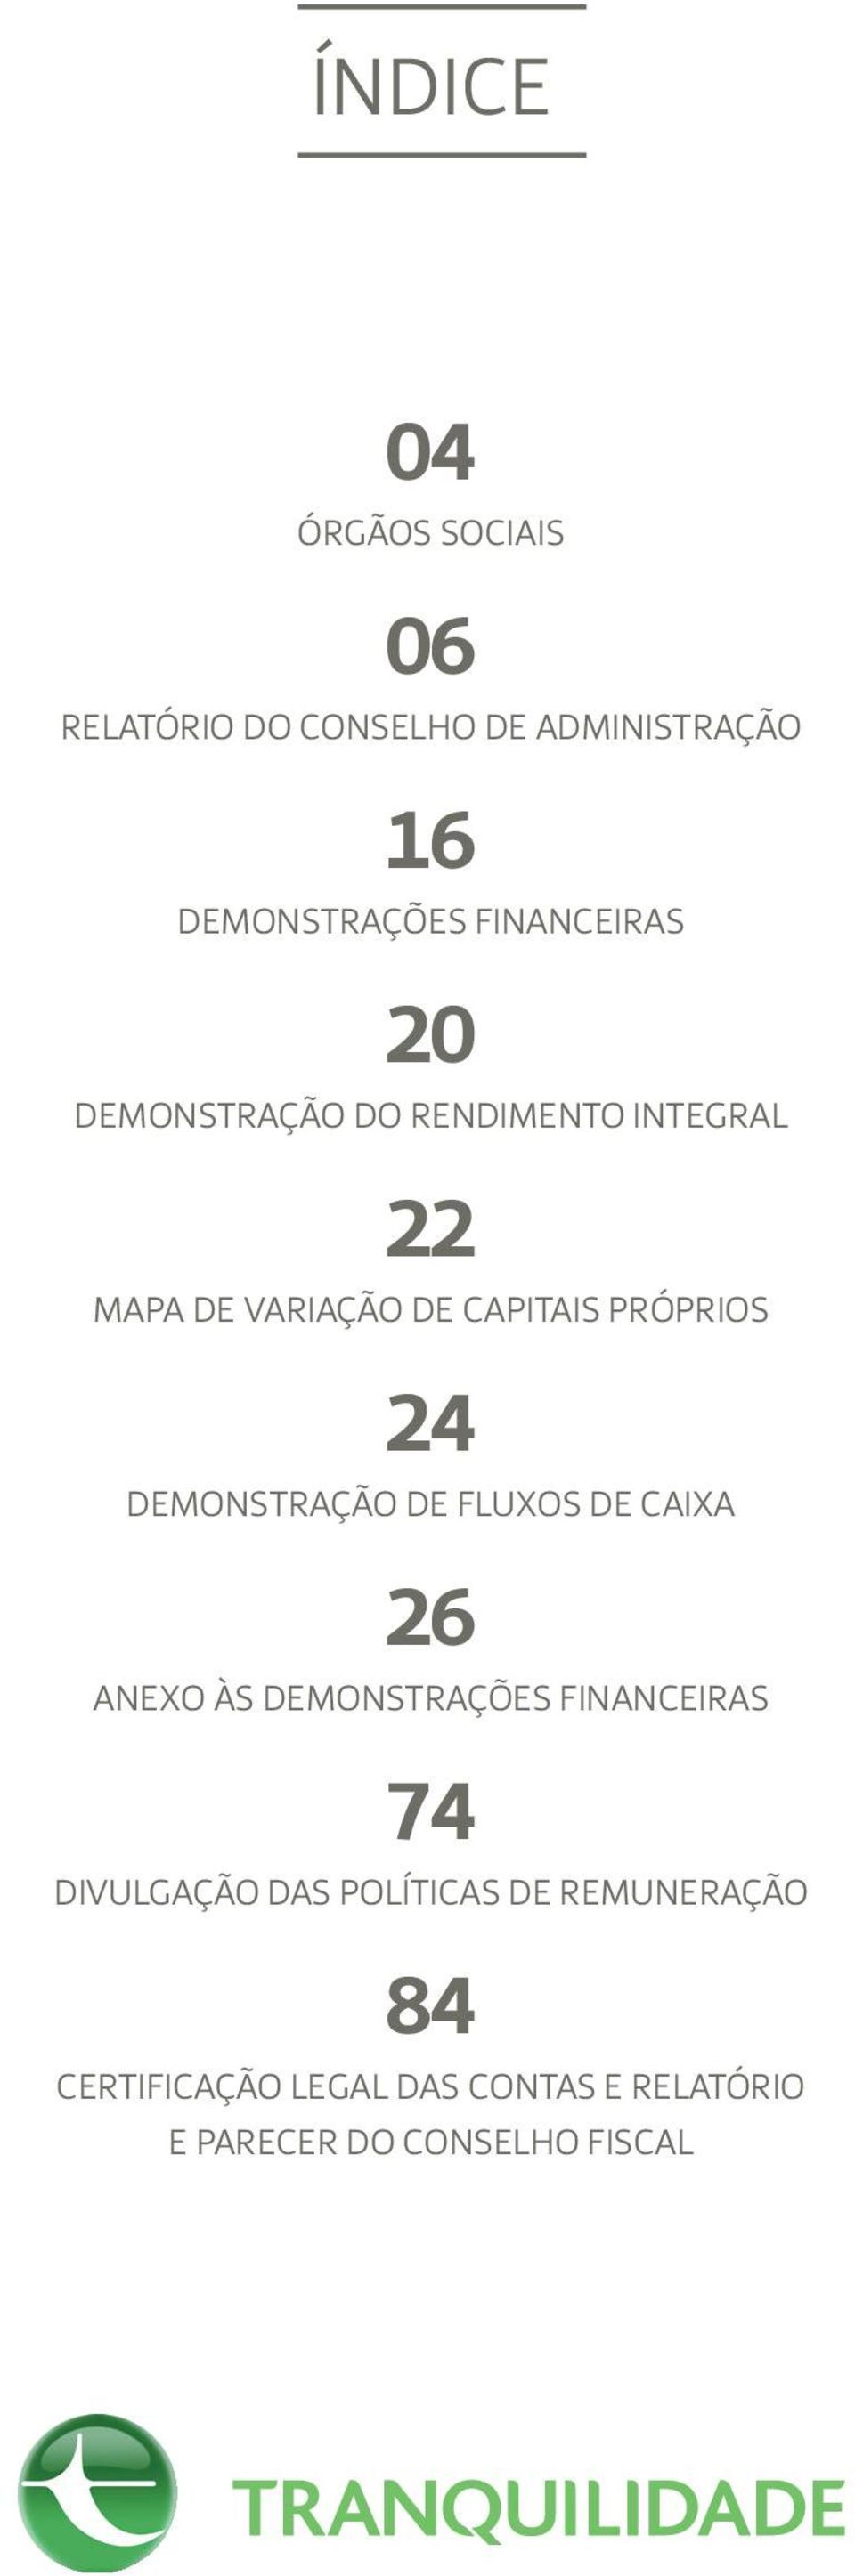 24 DEMONSTRAÇÃO DE FLUXOS DE CAIXA 26 ANEXO ÀS DEMONSTRAÇÕES FINANCEIRAS 74 DIVULGAÇÃO DAS